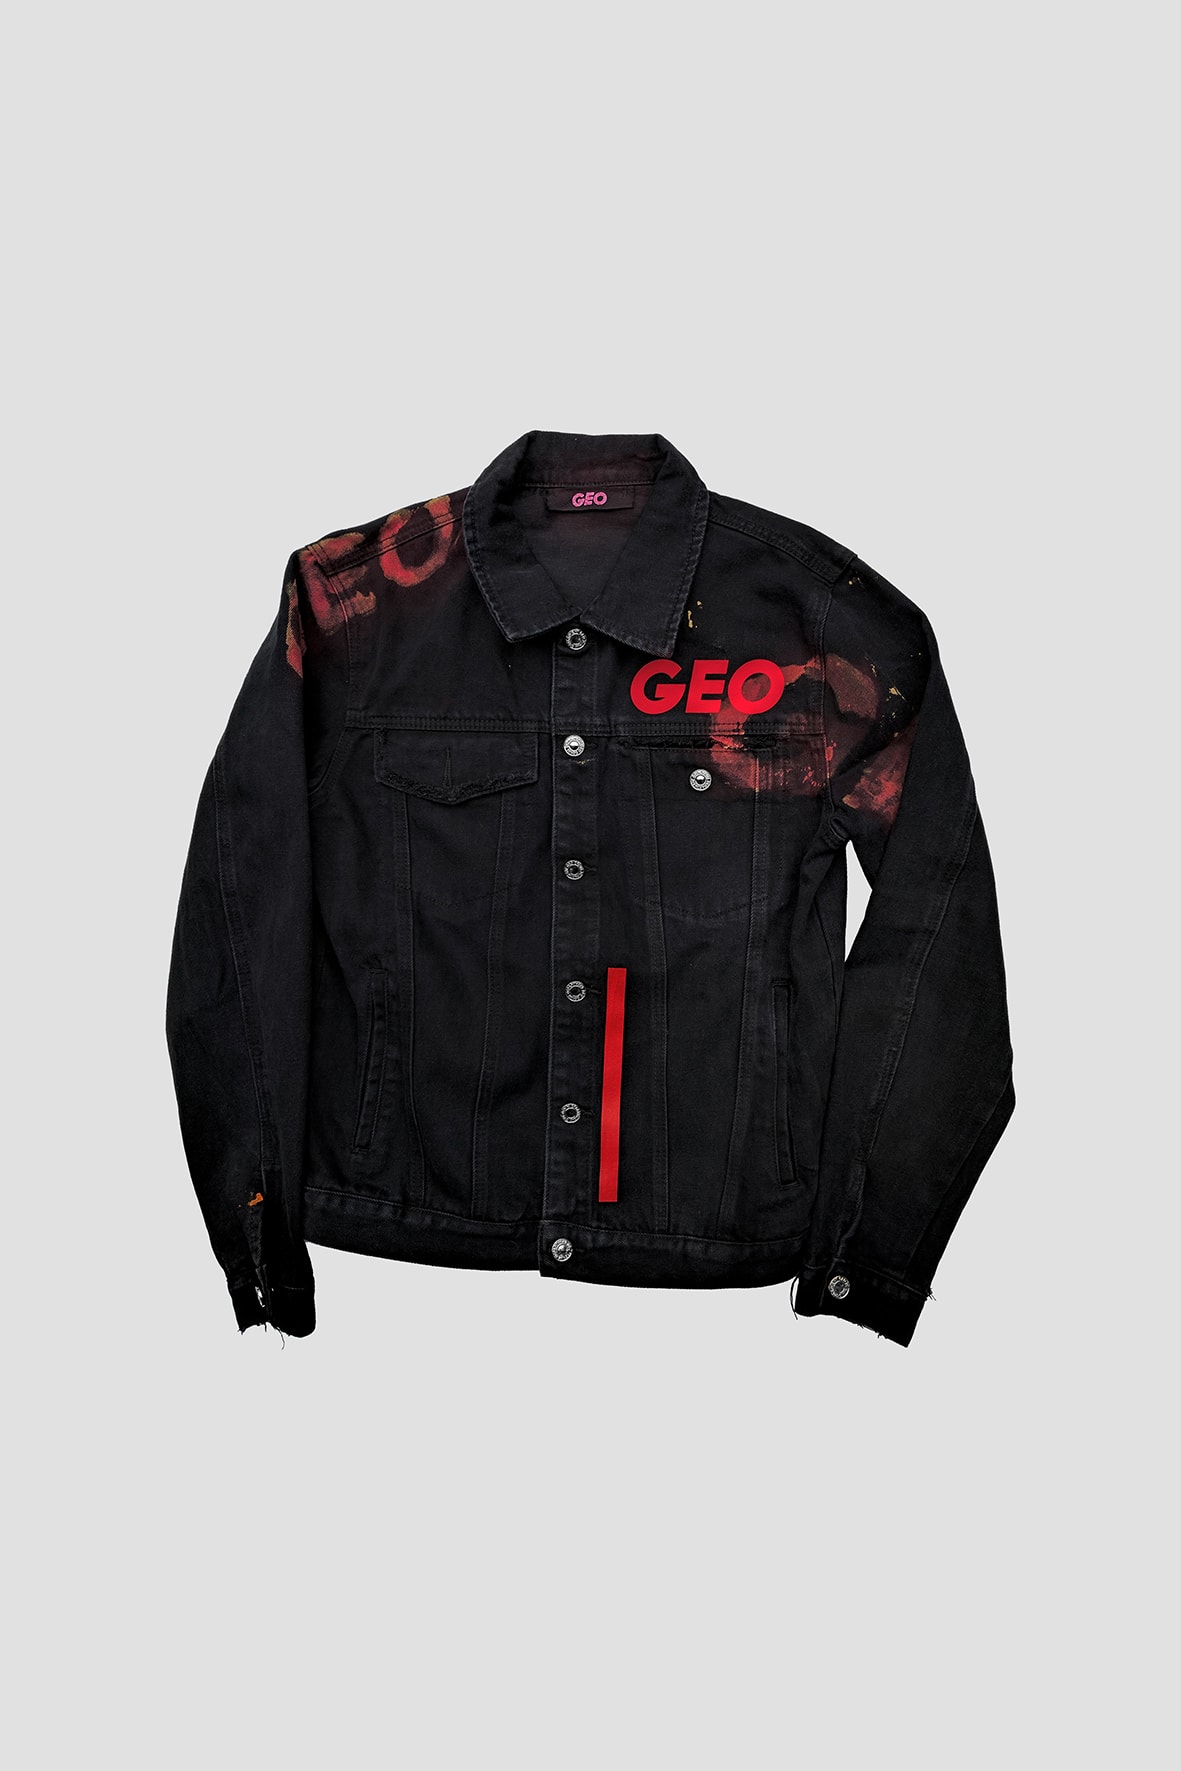 GEO Exclusive Unique Denim Jackets at I.T. Apparels Hong Kong